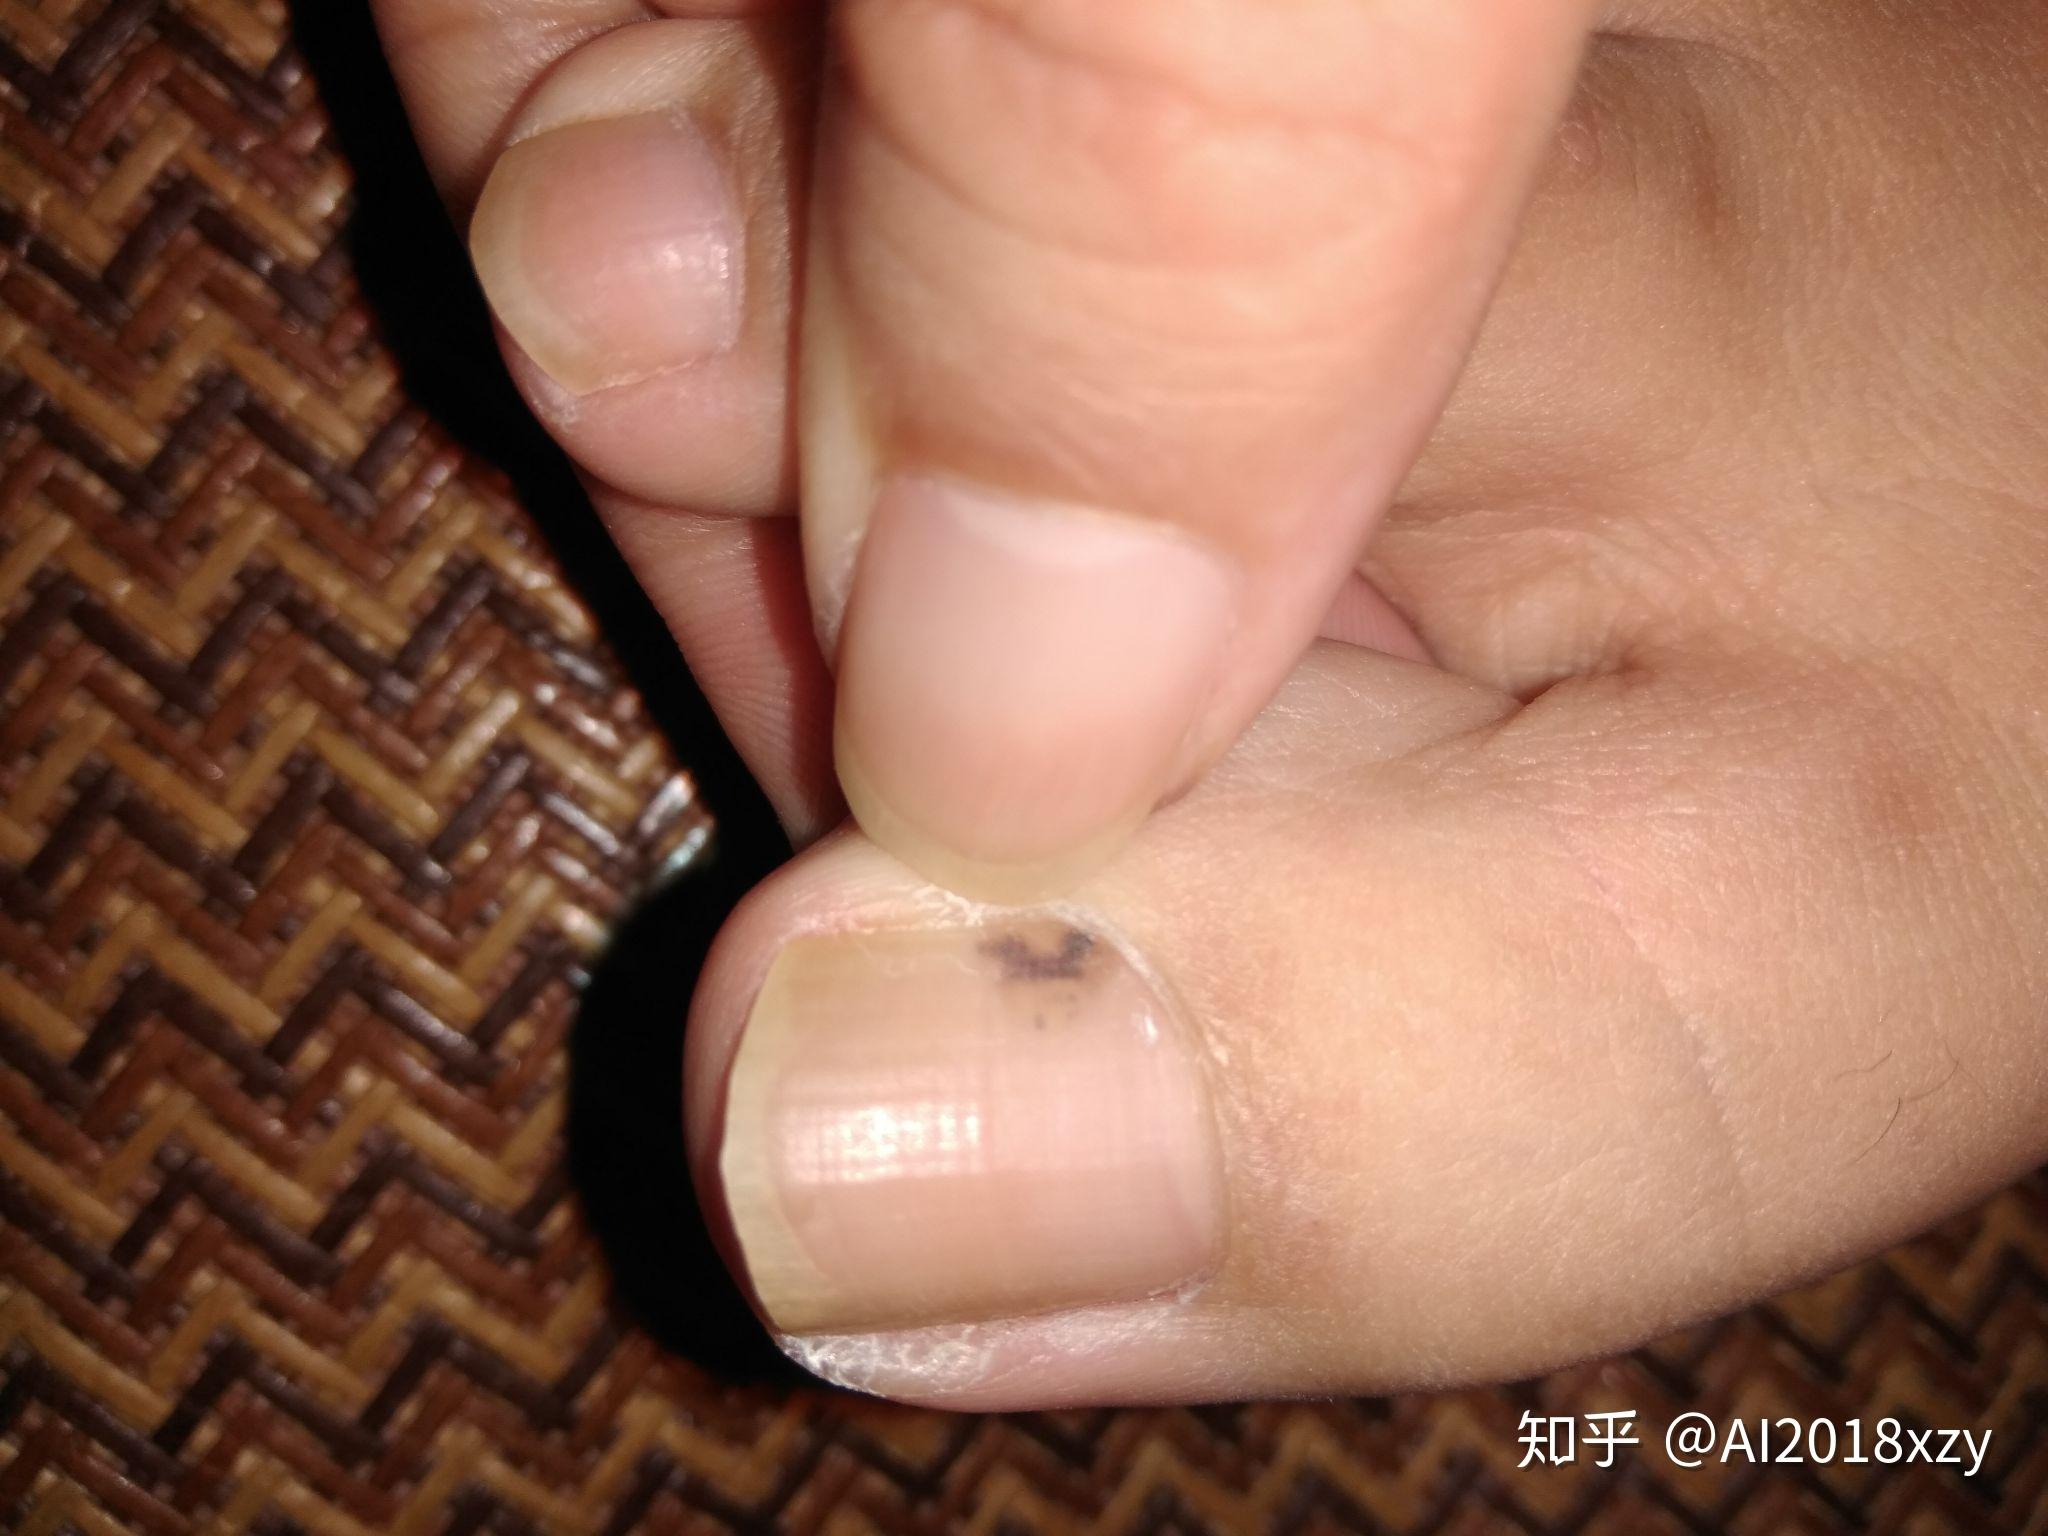 脚指甲黑色素瘤照片图片